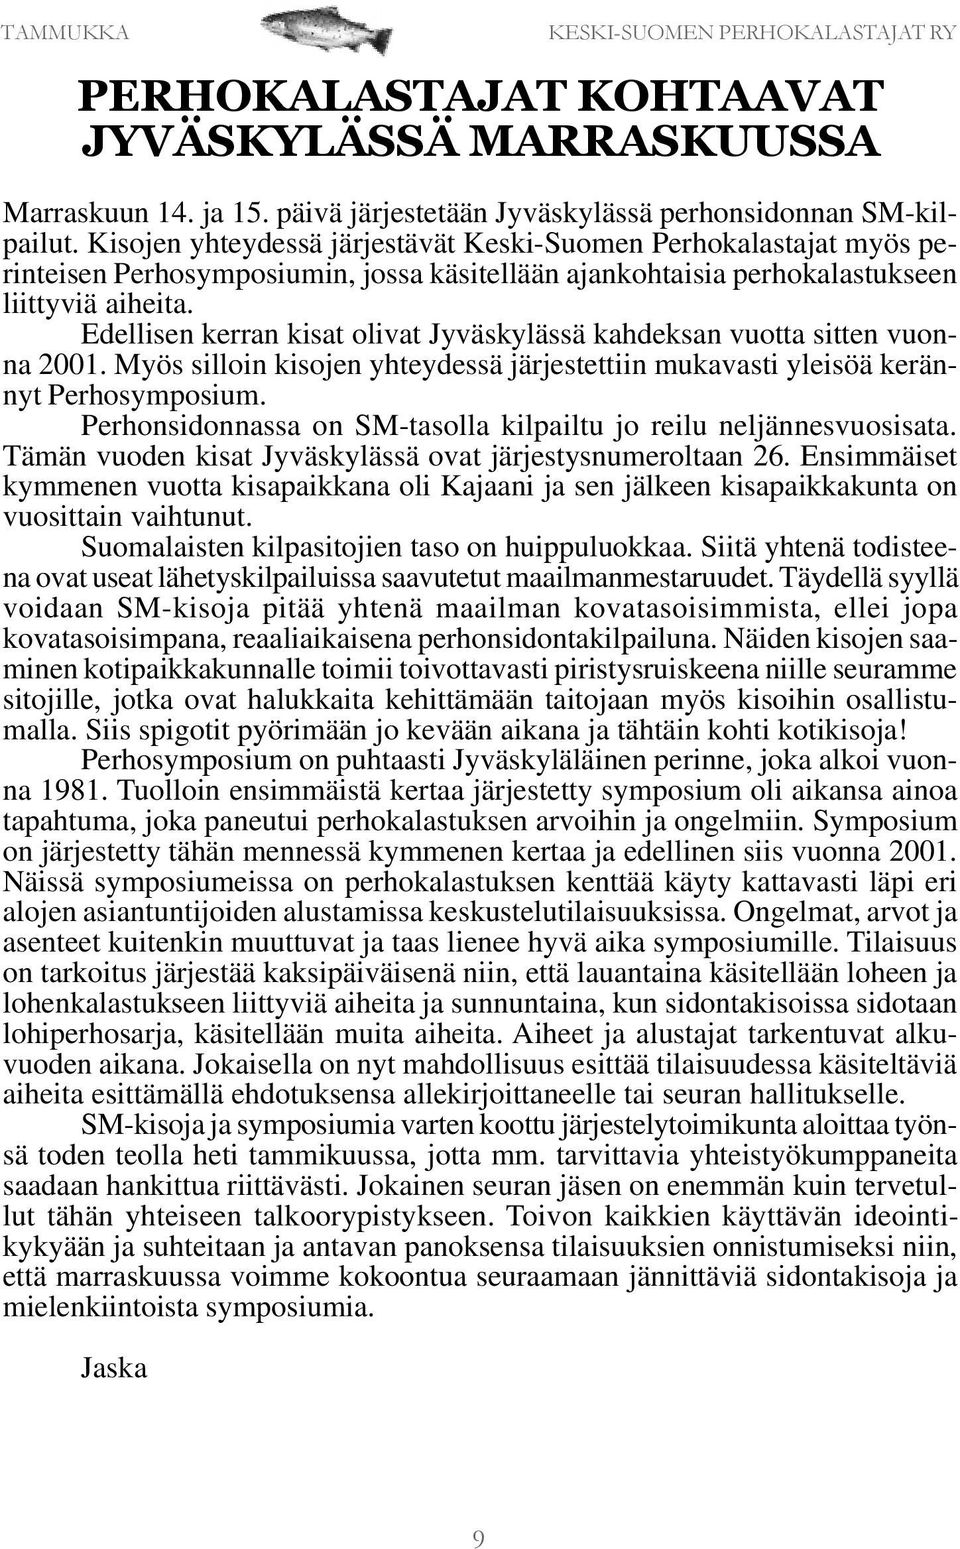 Edellisen kerran kisat olivat Jyväskylässä kahdeksan vuotta sitten vuonna 2001. Myös silloin kisojen yhteydessä järjestettiin mukavasti yleisöä kerännyt Perhosymposium.